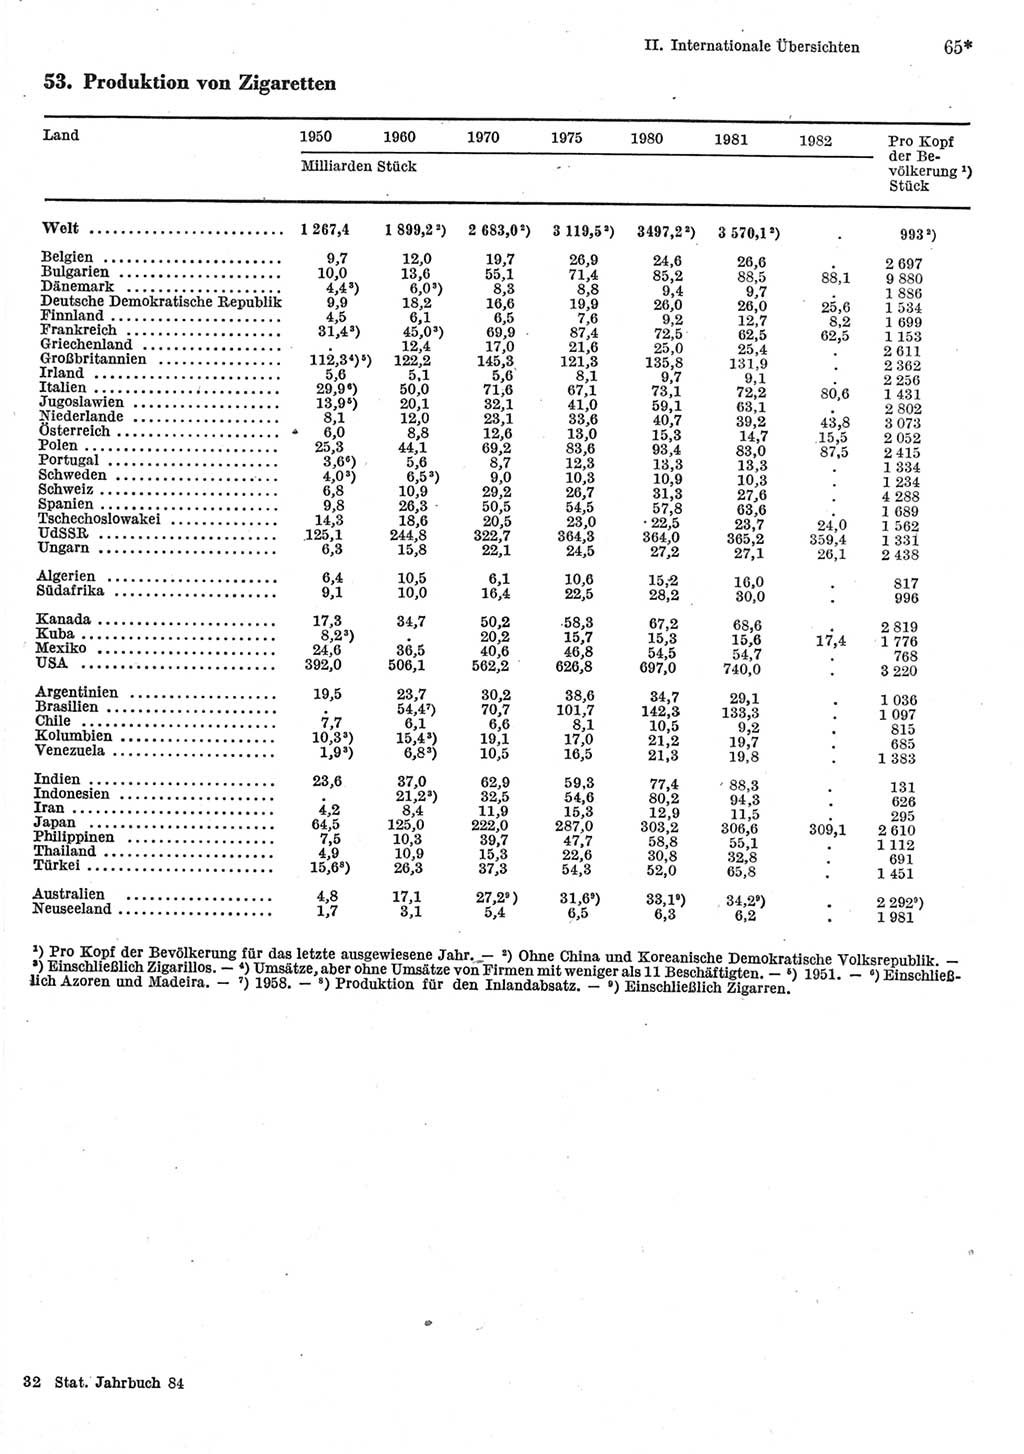 Statistisches Jahrbuch der Deutschen Demokratischen Republik (DDR) 1984, Seite 65 (Stat. Jb. DDR 1984, S. 65)